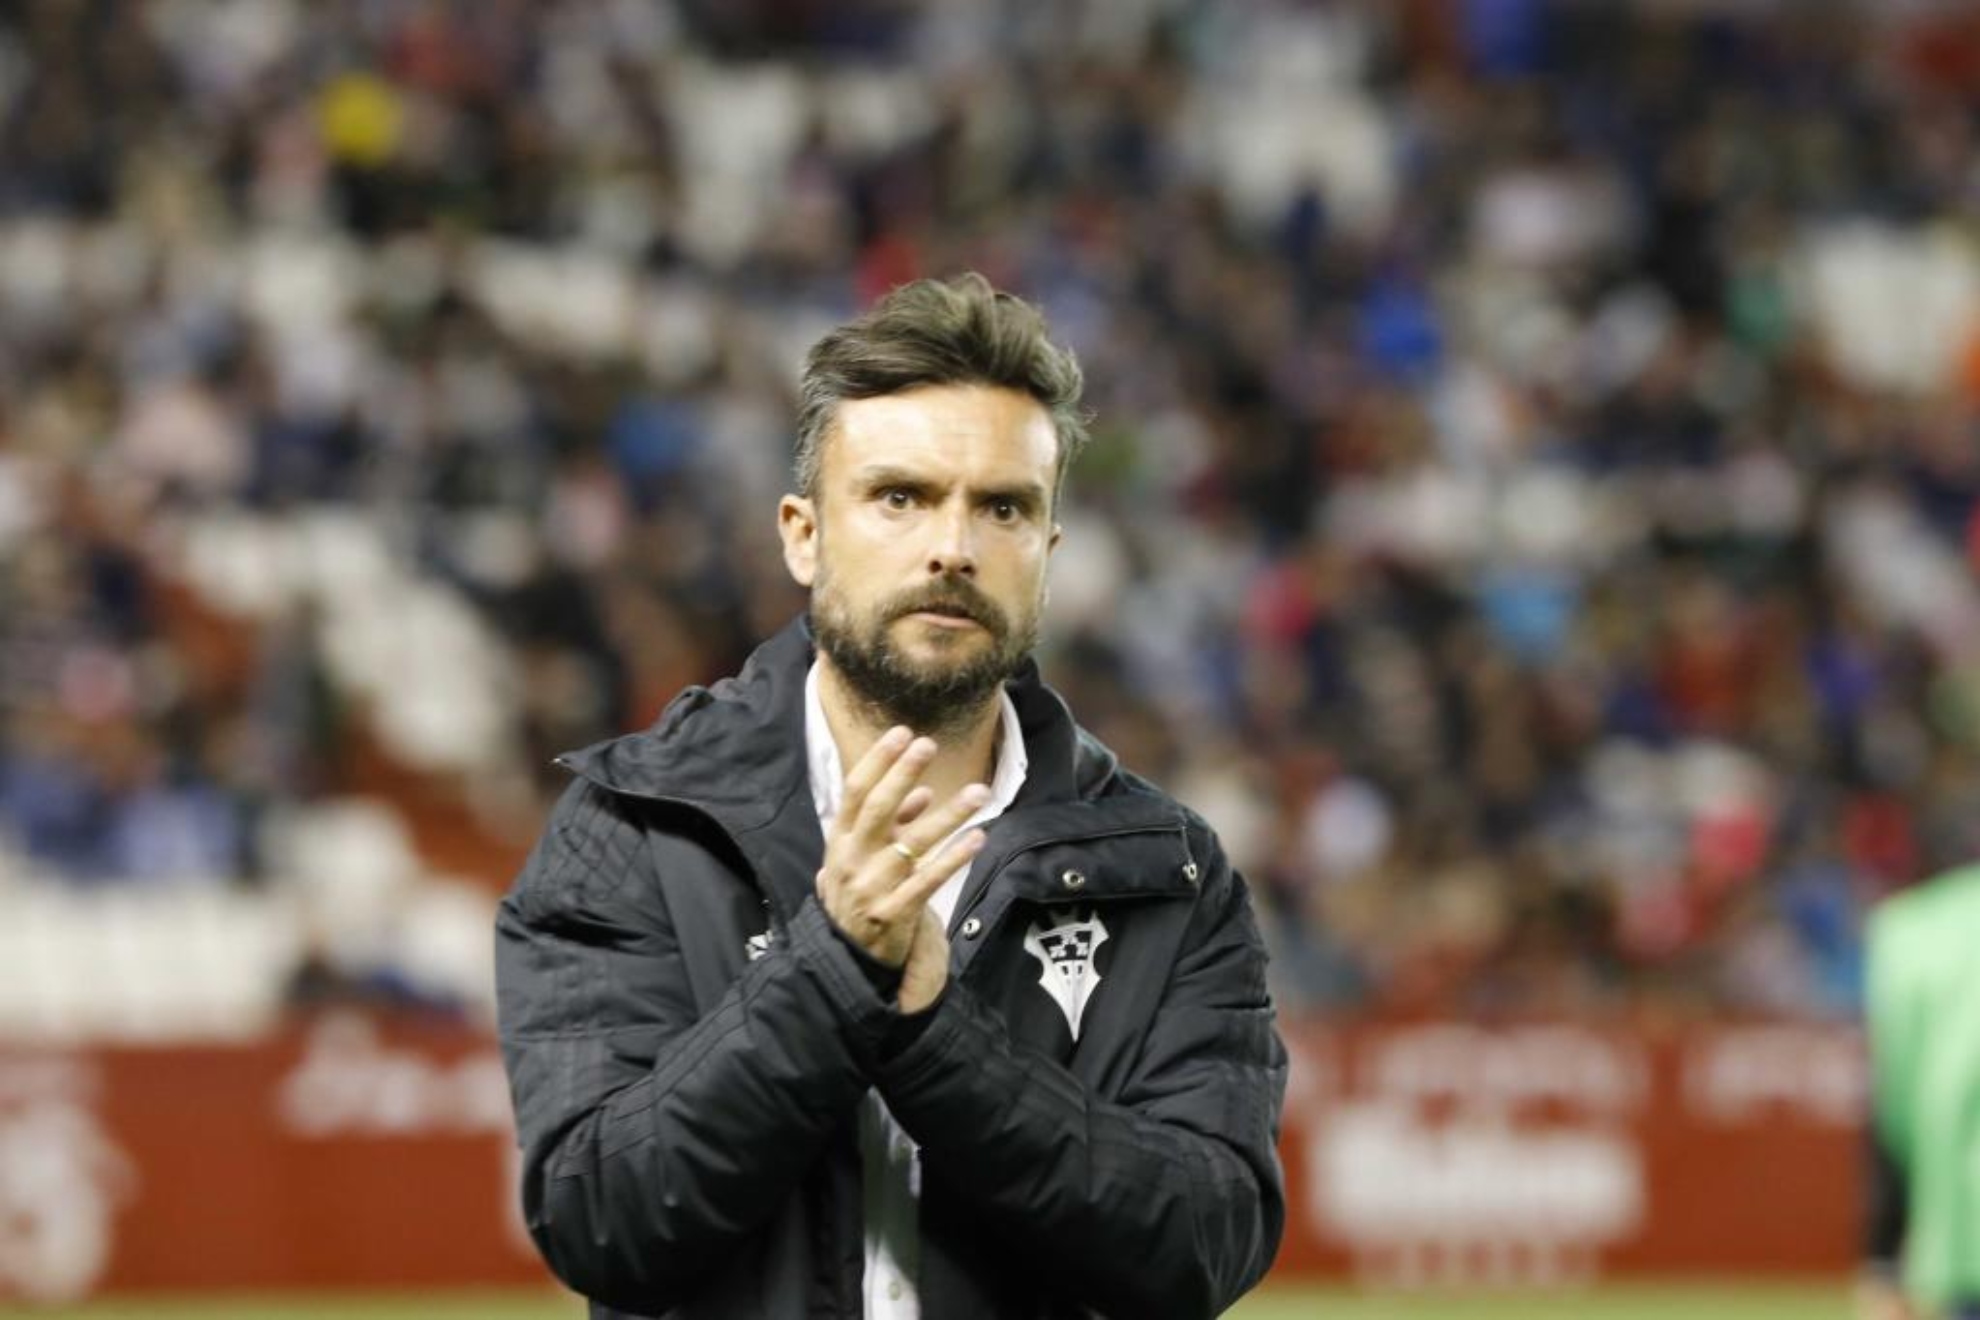 Rubén Albés aplaude a los aficionados del Belmonte tras un partido.